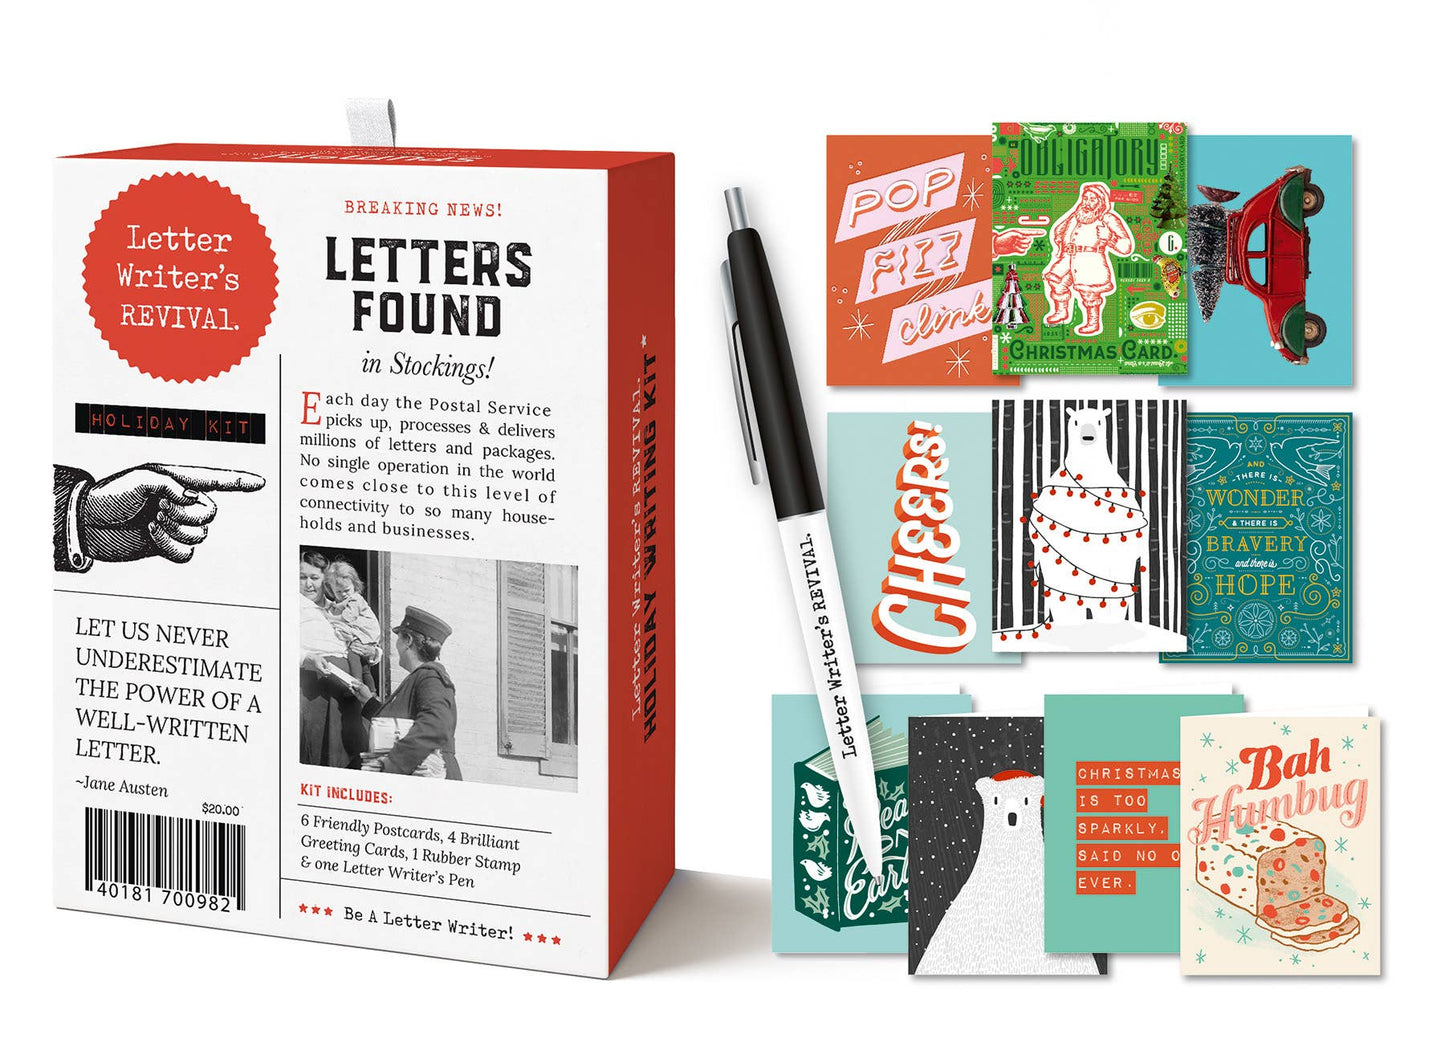 Letter Writer's Revival; Holiday Kit